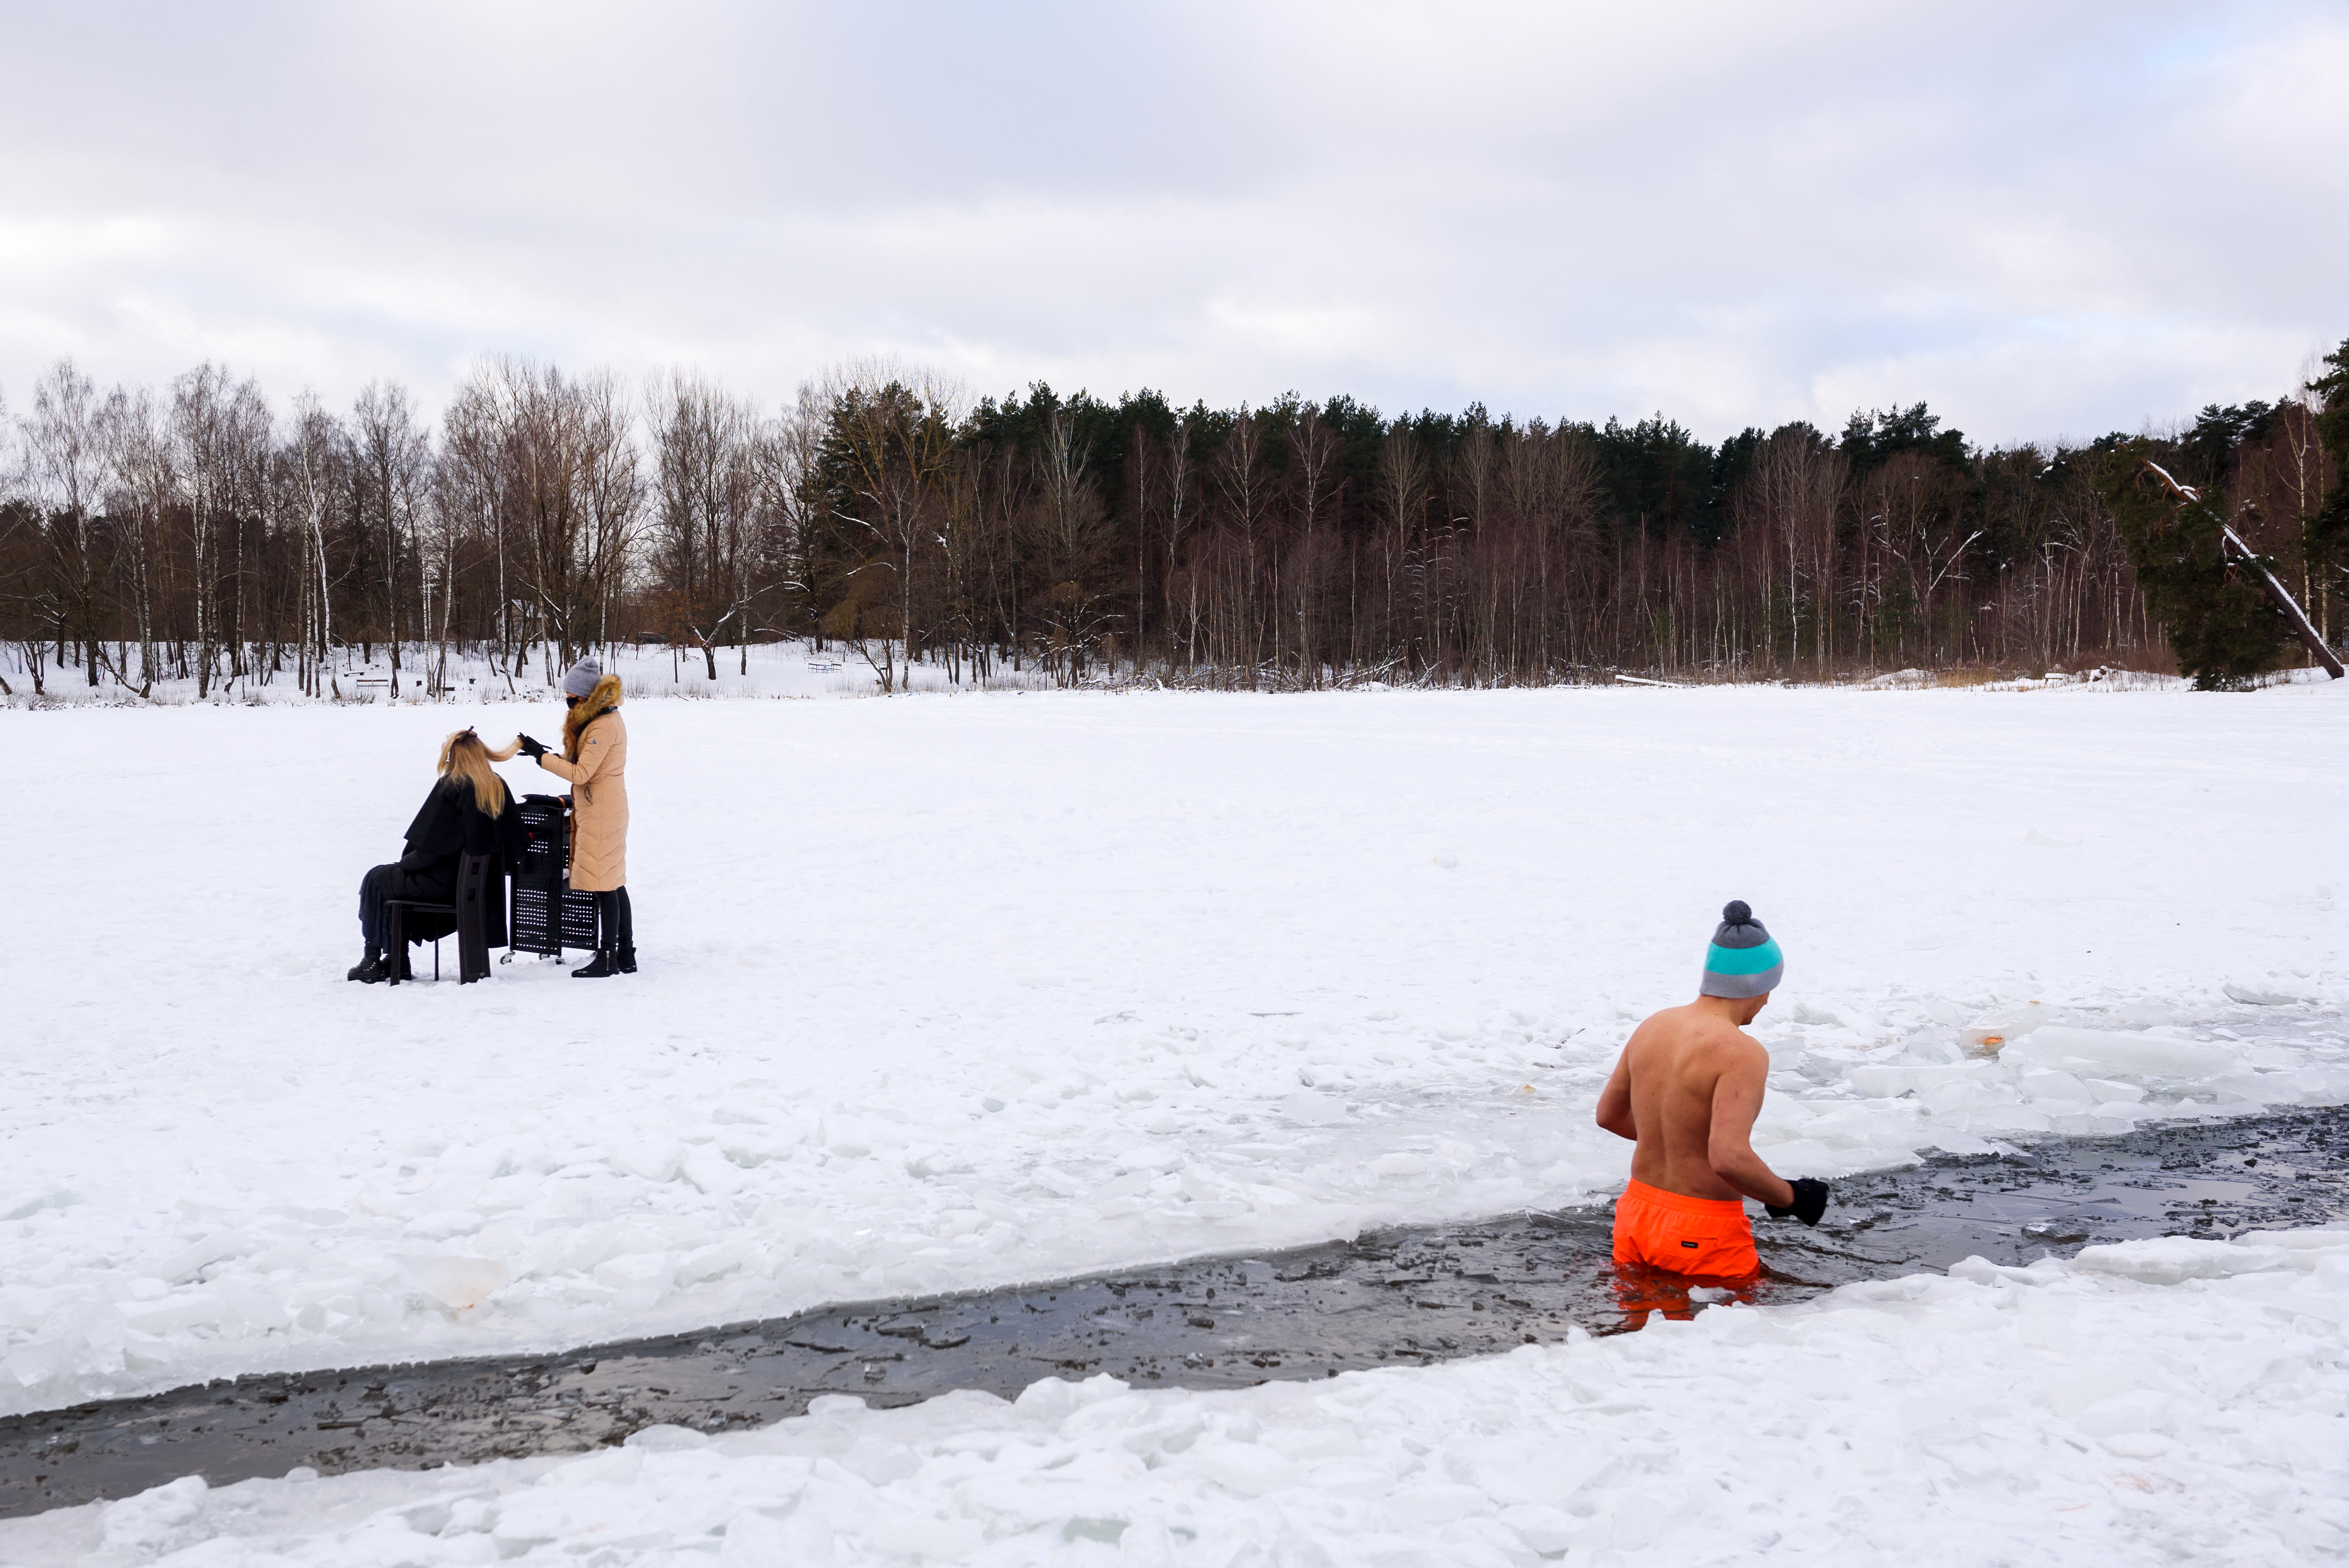 A fodrászoknak is be kell zárniuk, mint egy éve ilyenkor, amikor ez a fotó készült a Babelitis tó partján, amikor ezt a narancssárga nadrágos úszót nem zavarta a befagyott tó jegén maszekoló szépségipari szolgáltató.